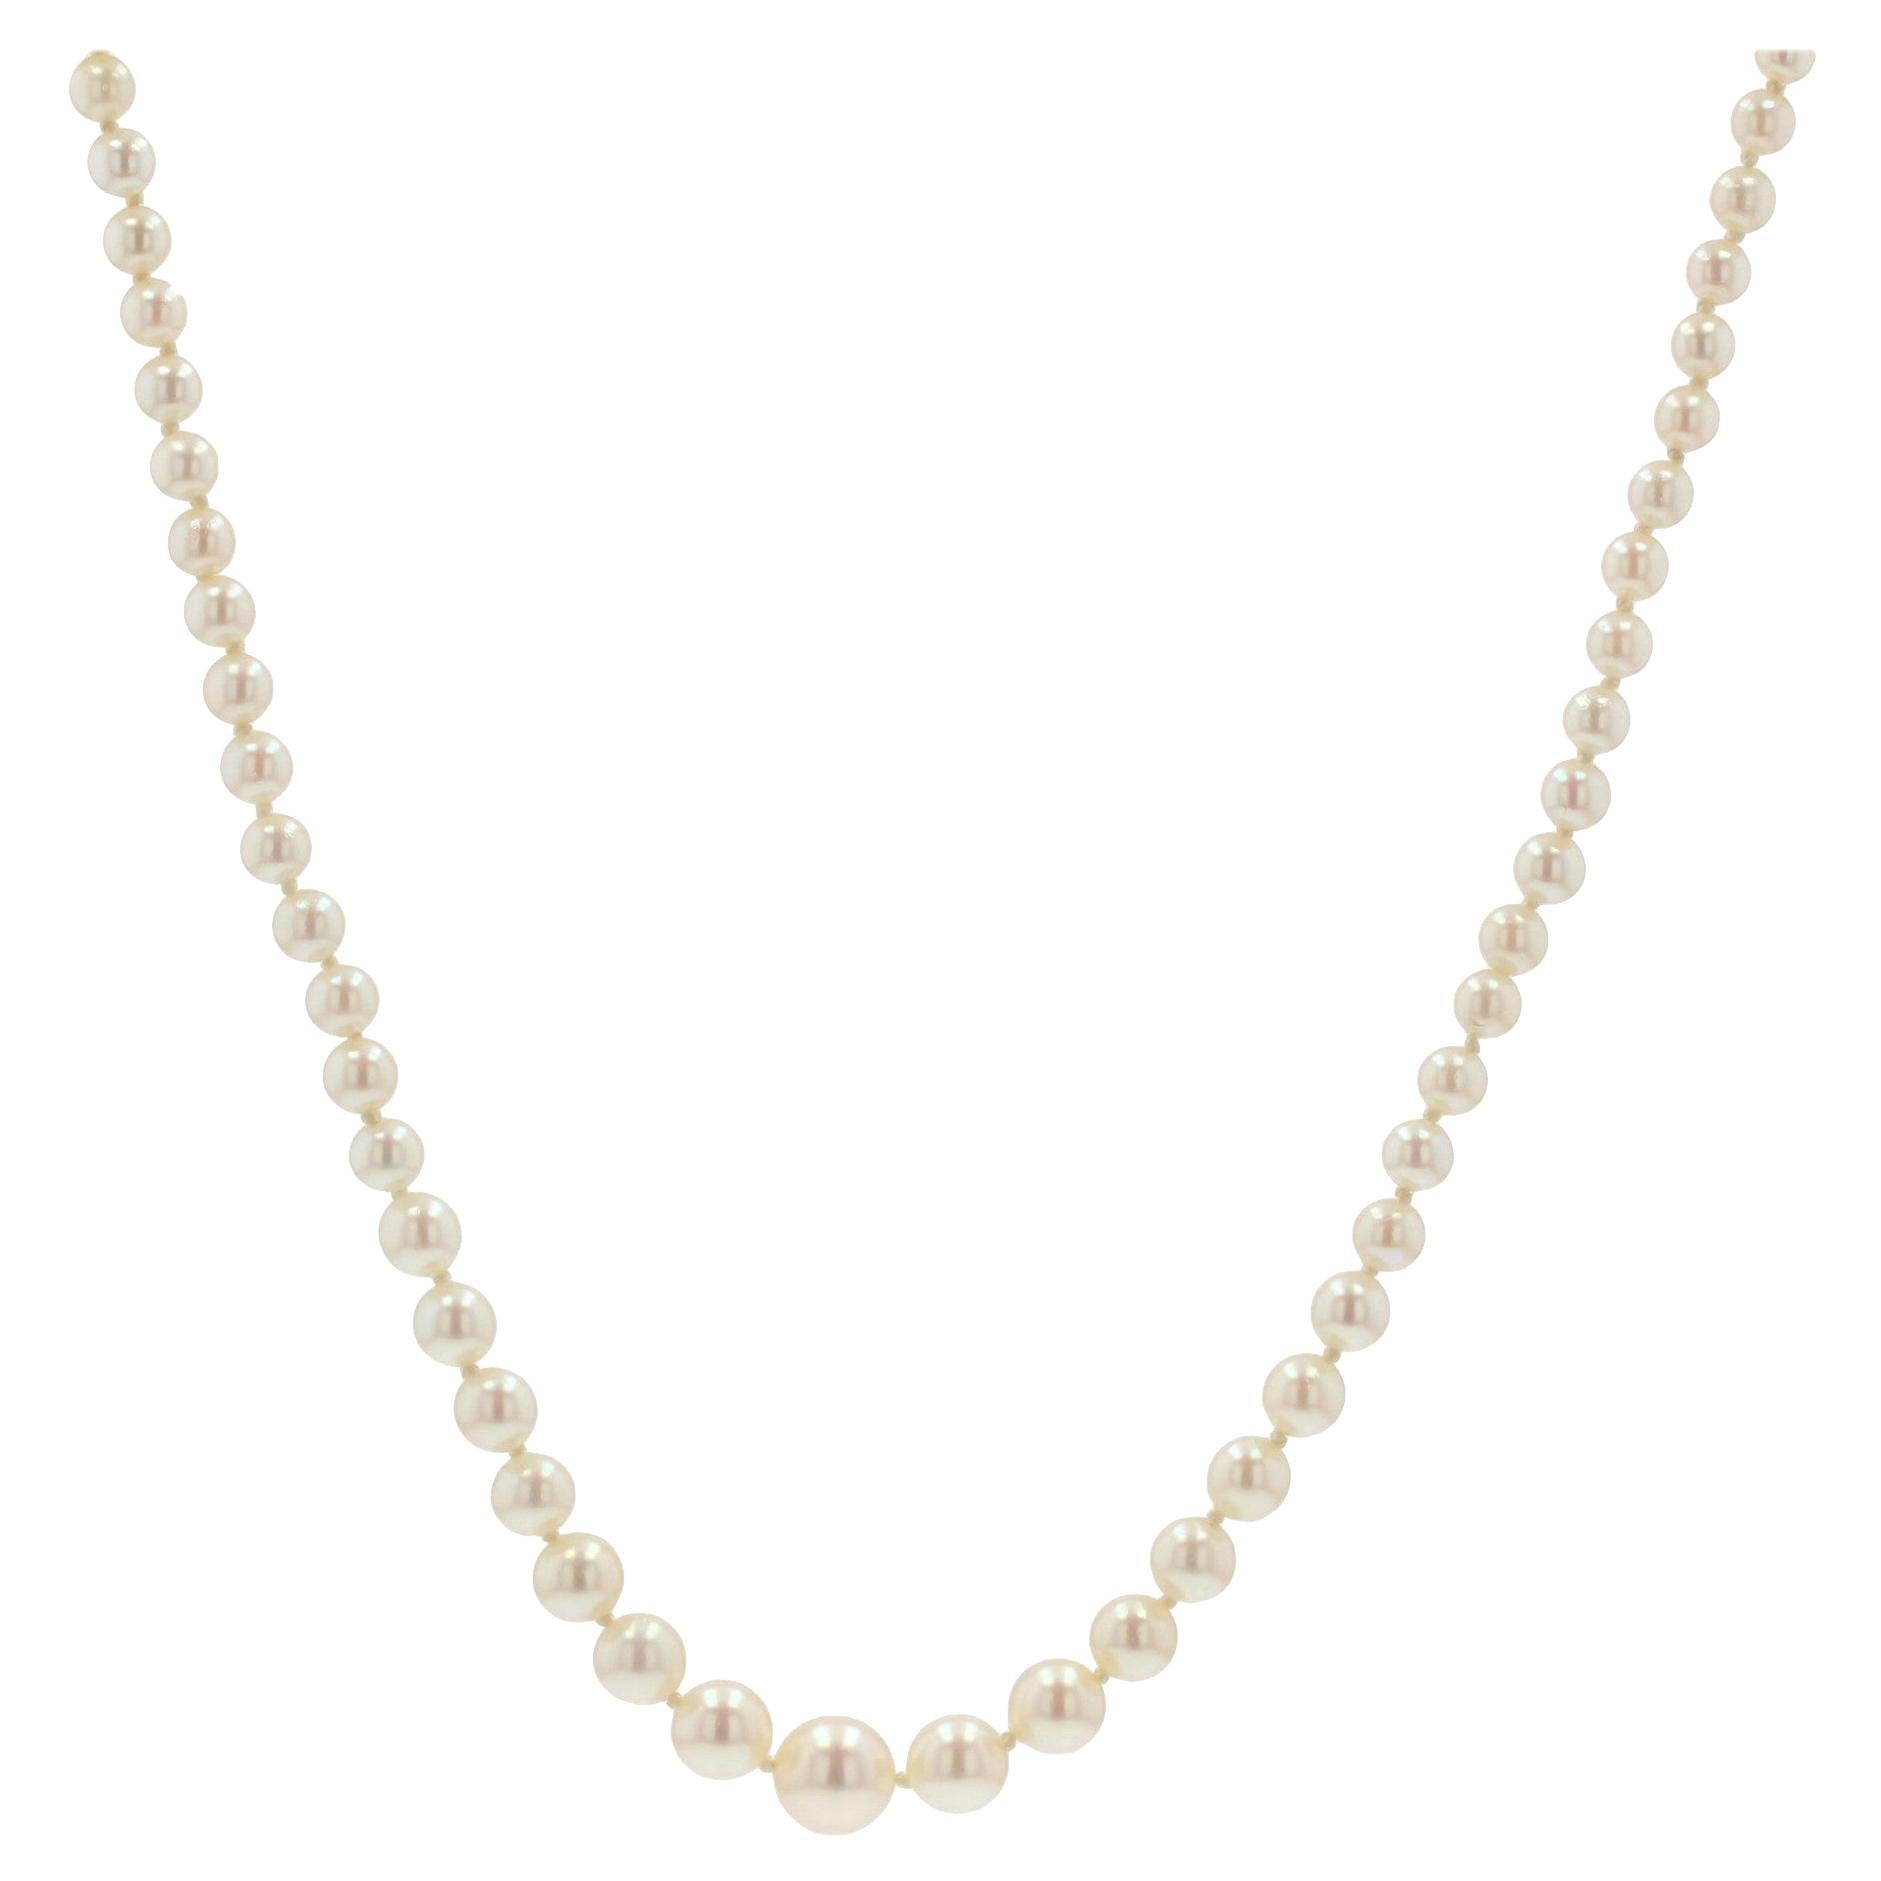 Collier français des années 1950 en perles blanches perlées d'Orient et perles de culture japonaise